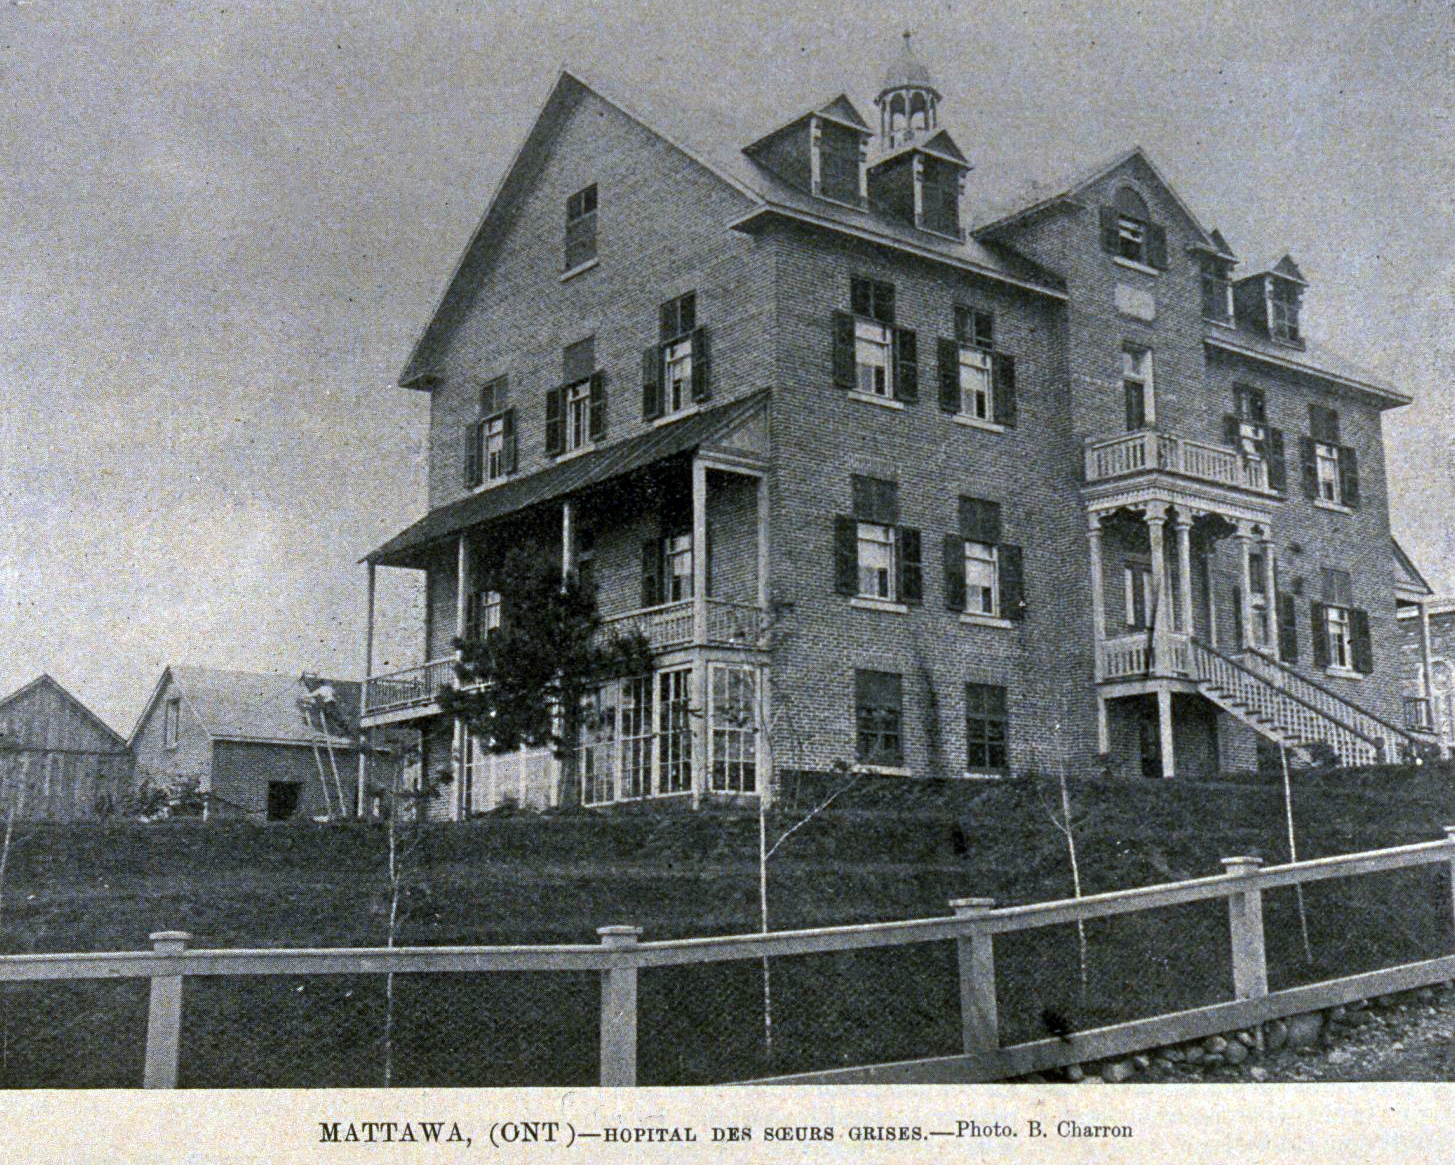 L'Hôpital des Soeurs grises, 1894